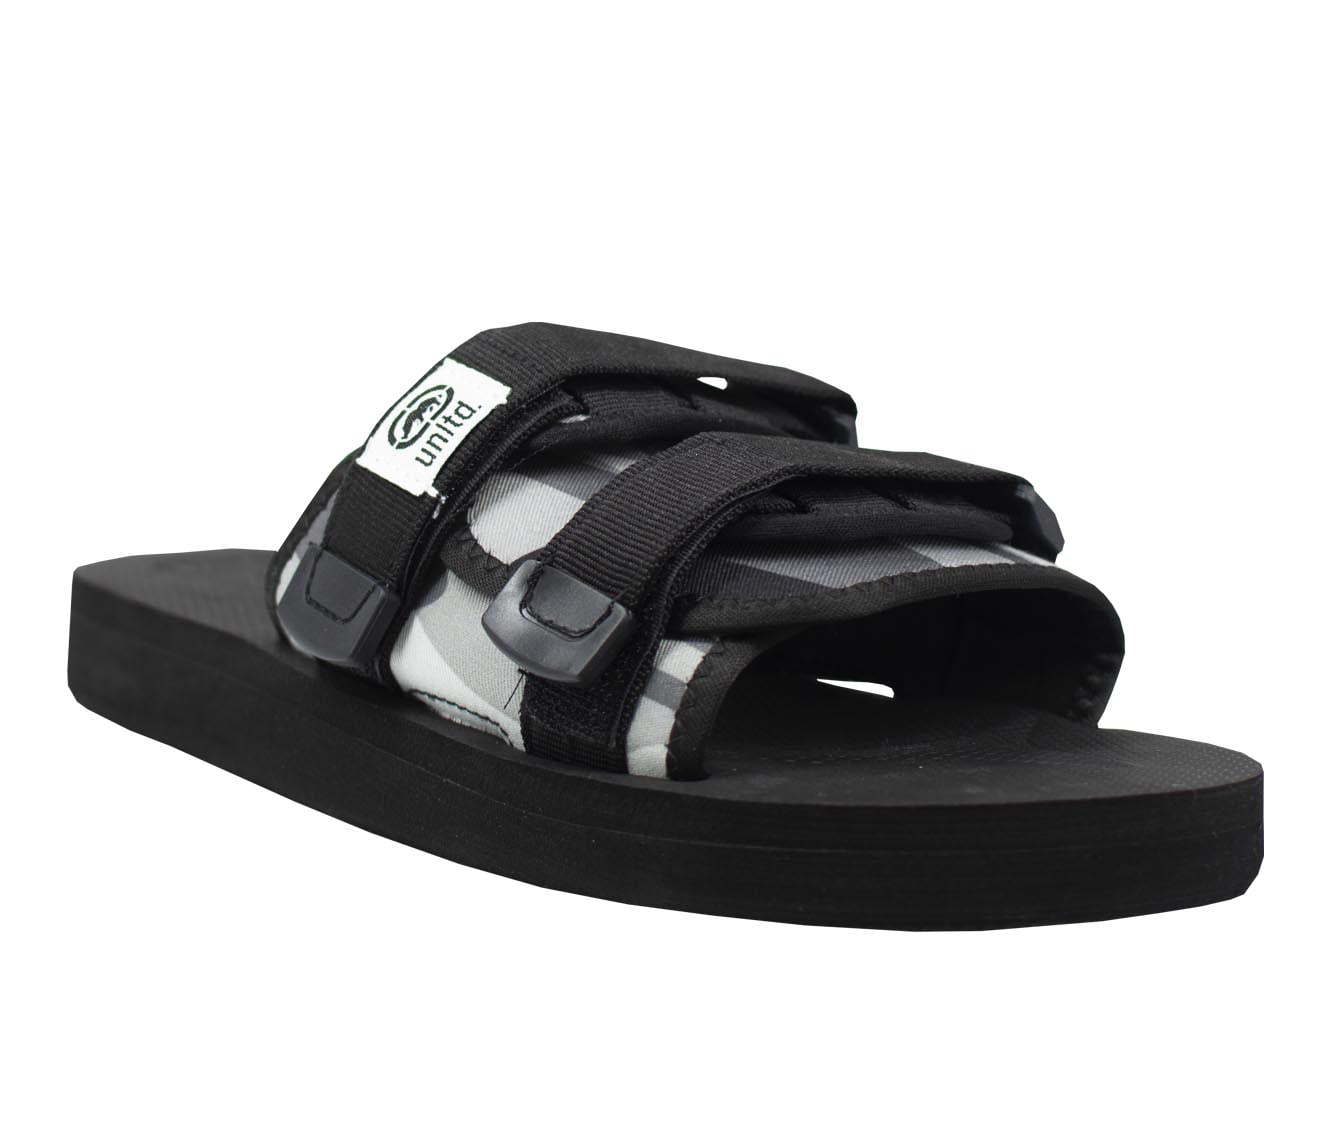 Ecko Unltd. Lightweight Sandals for Men